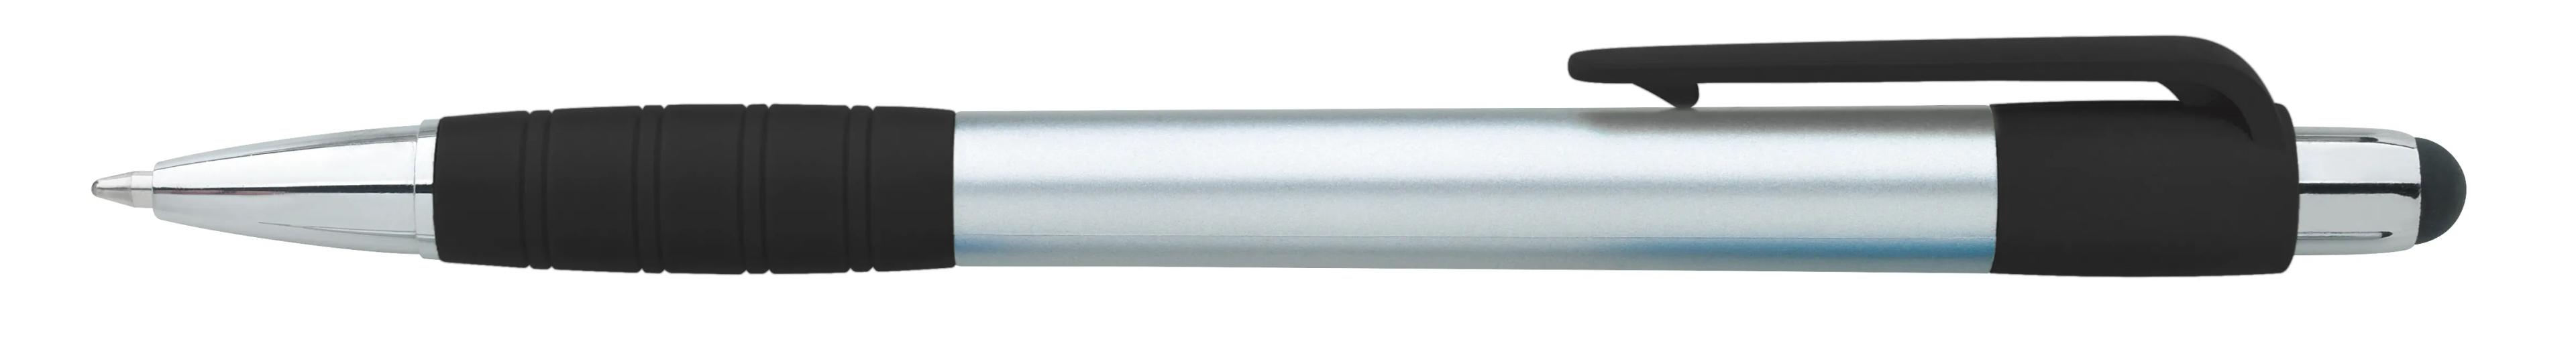 Silver Element Stylus Pen 3 of 53